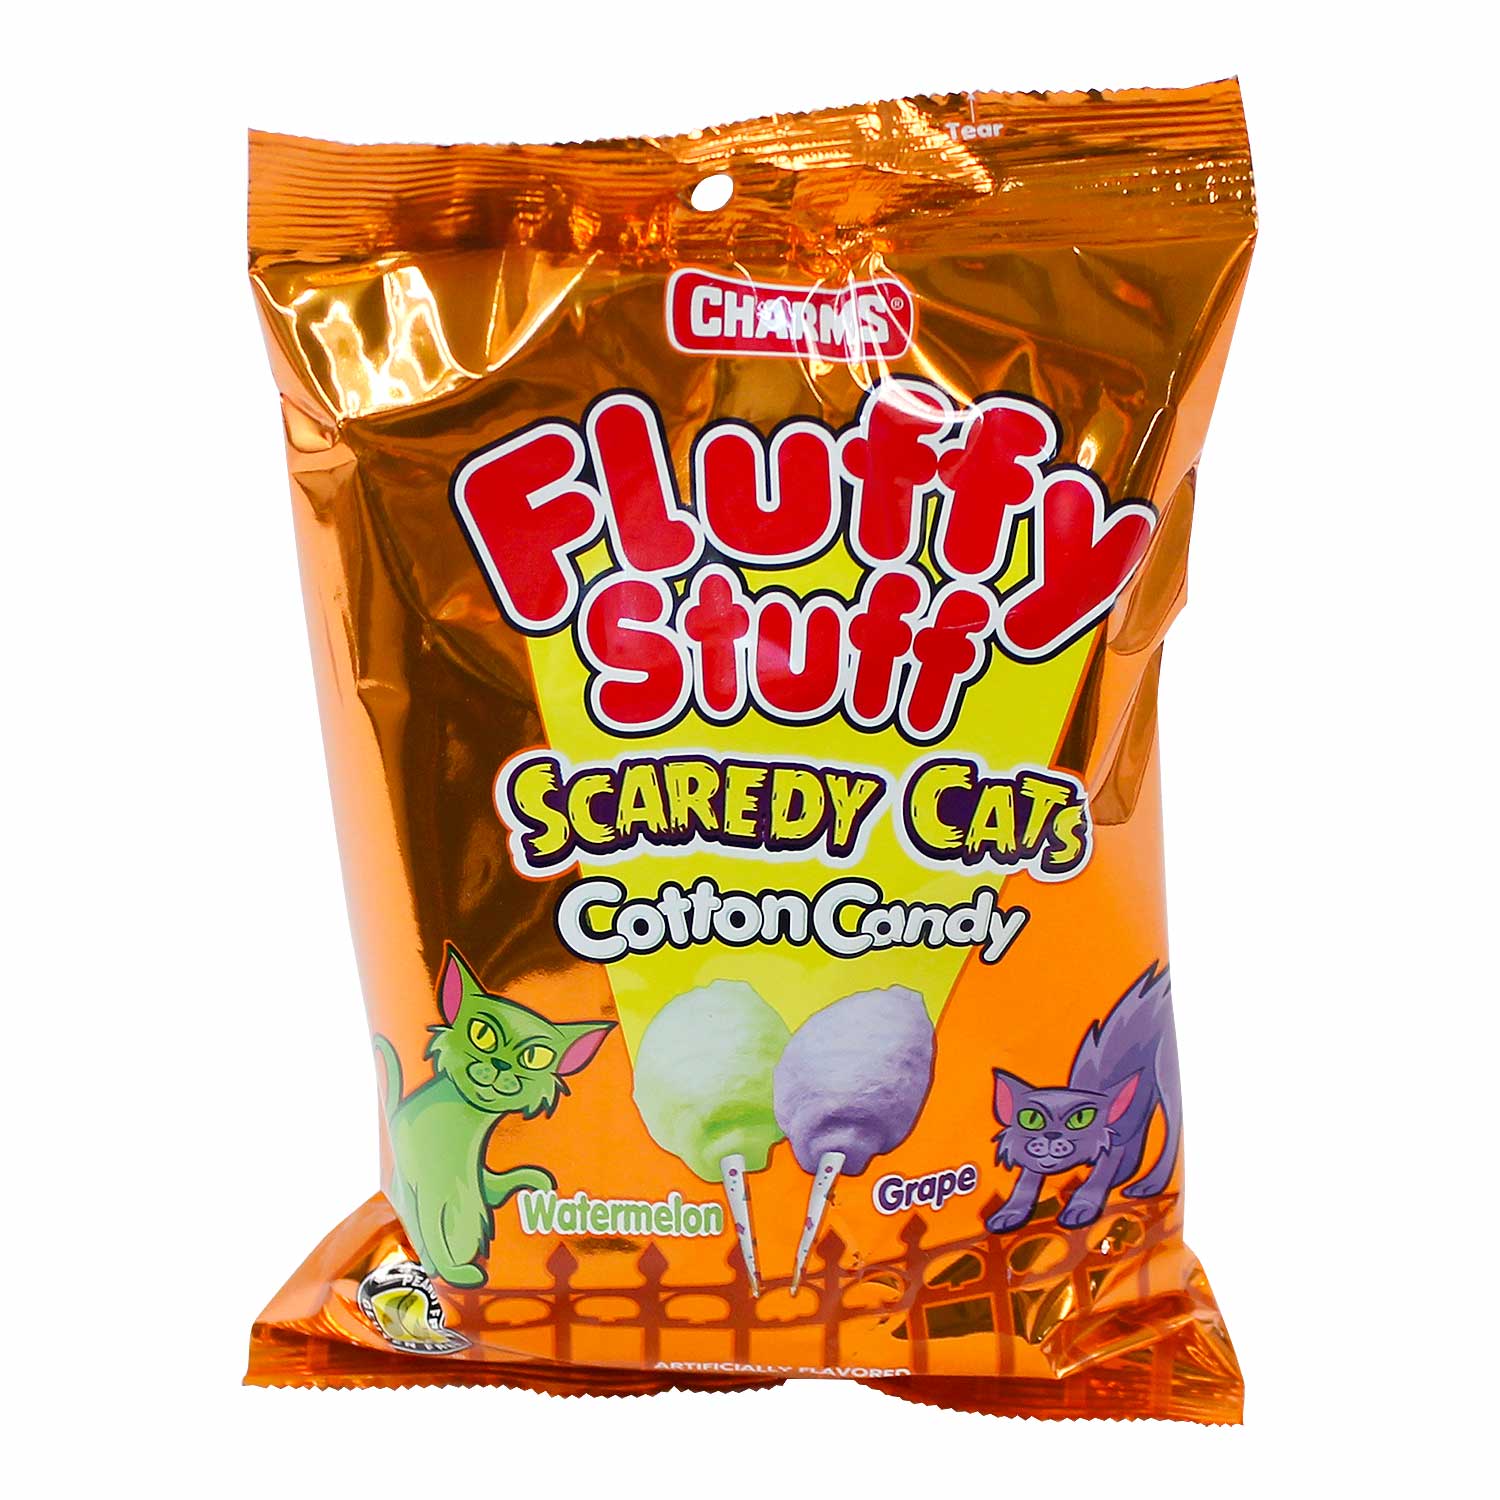 fluffy stuff cotton